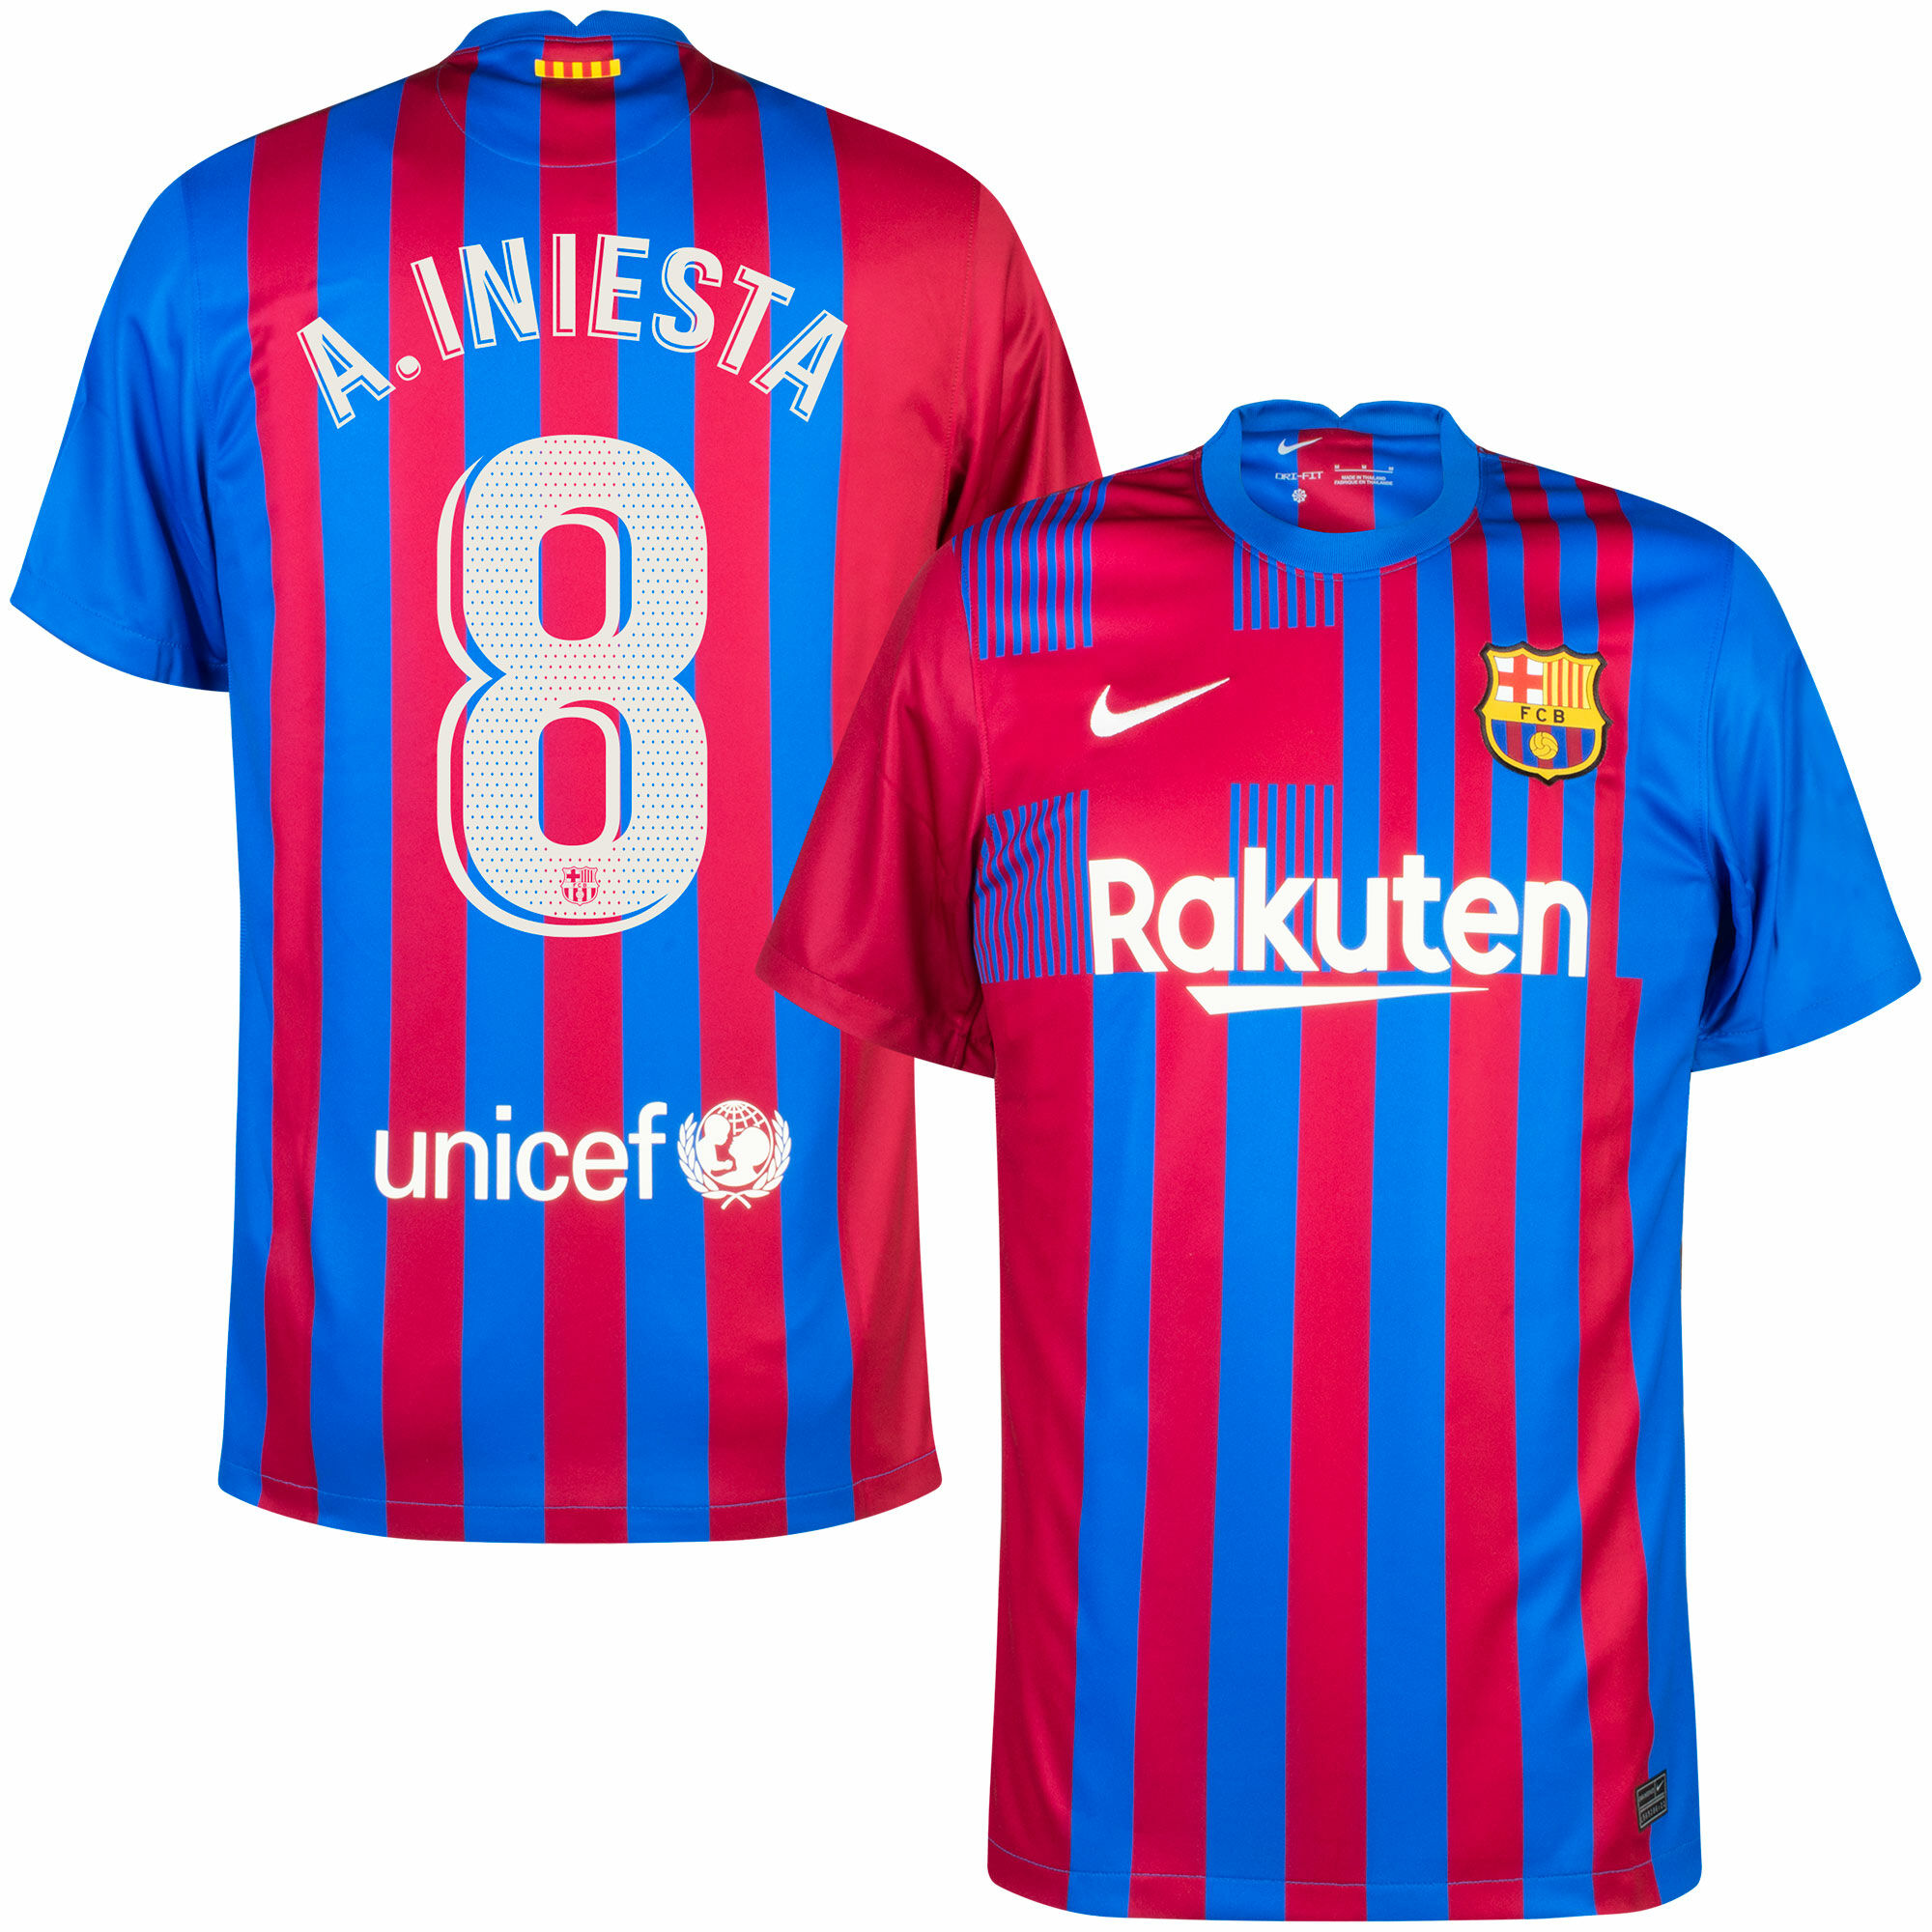 Barcelona - Dres fotbalový - sezóna 2021/22, Andrés Iniesta, oficiální potisk, modročervený, domácí, číslo 8